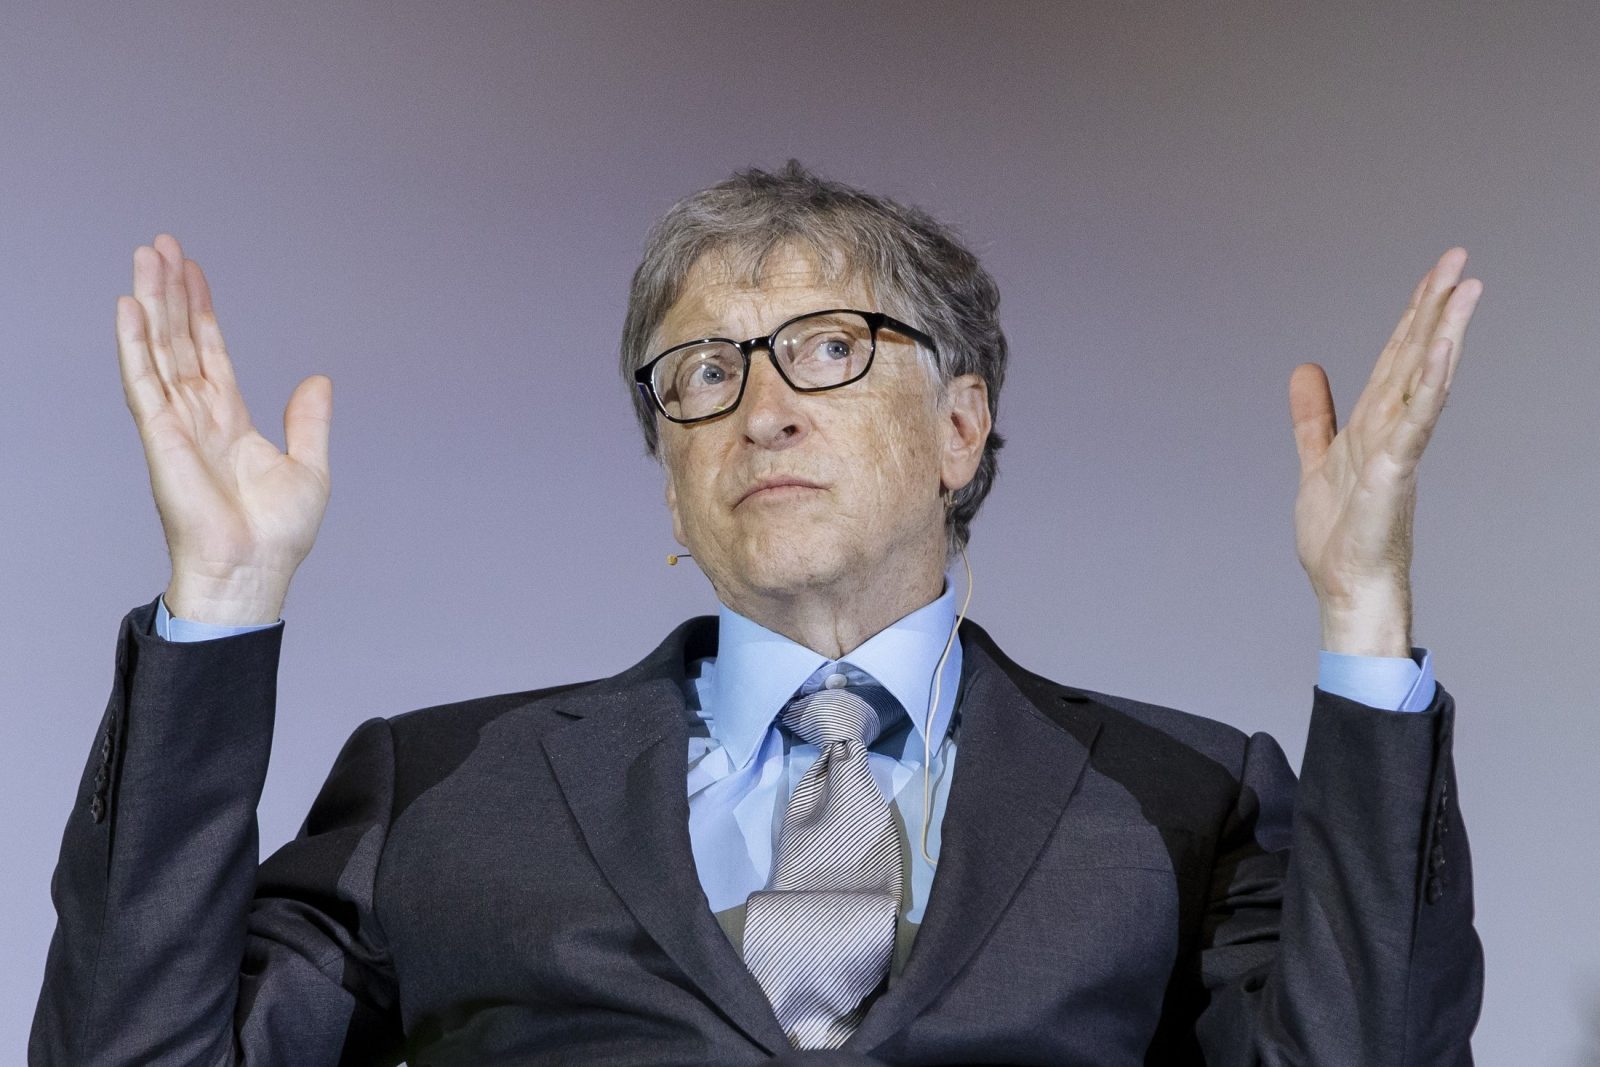 Билл Гейтс ушёл из Microsoft в прошлом году. Возможно, из-за расследования по поводу романа с коллегой